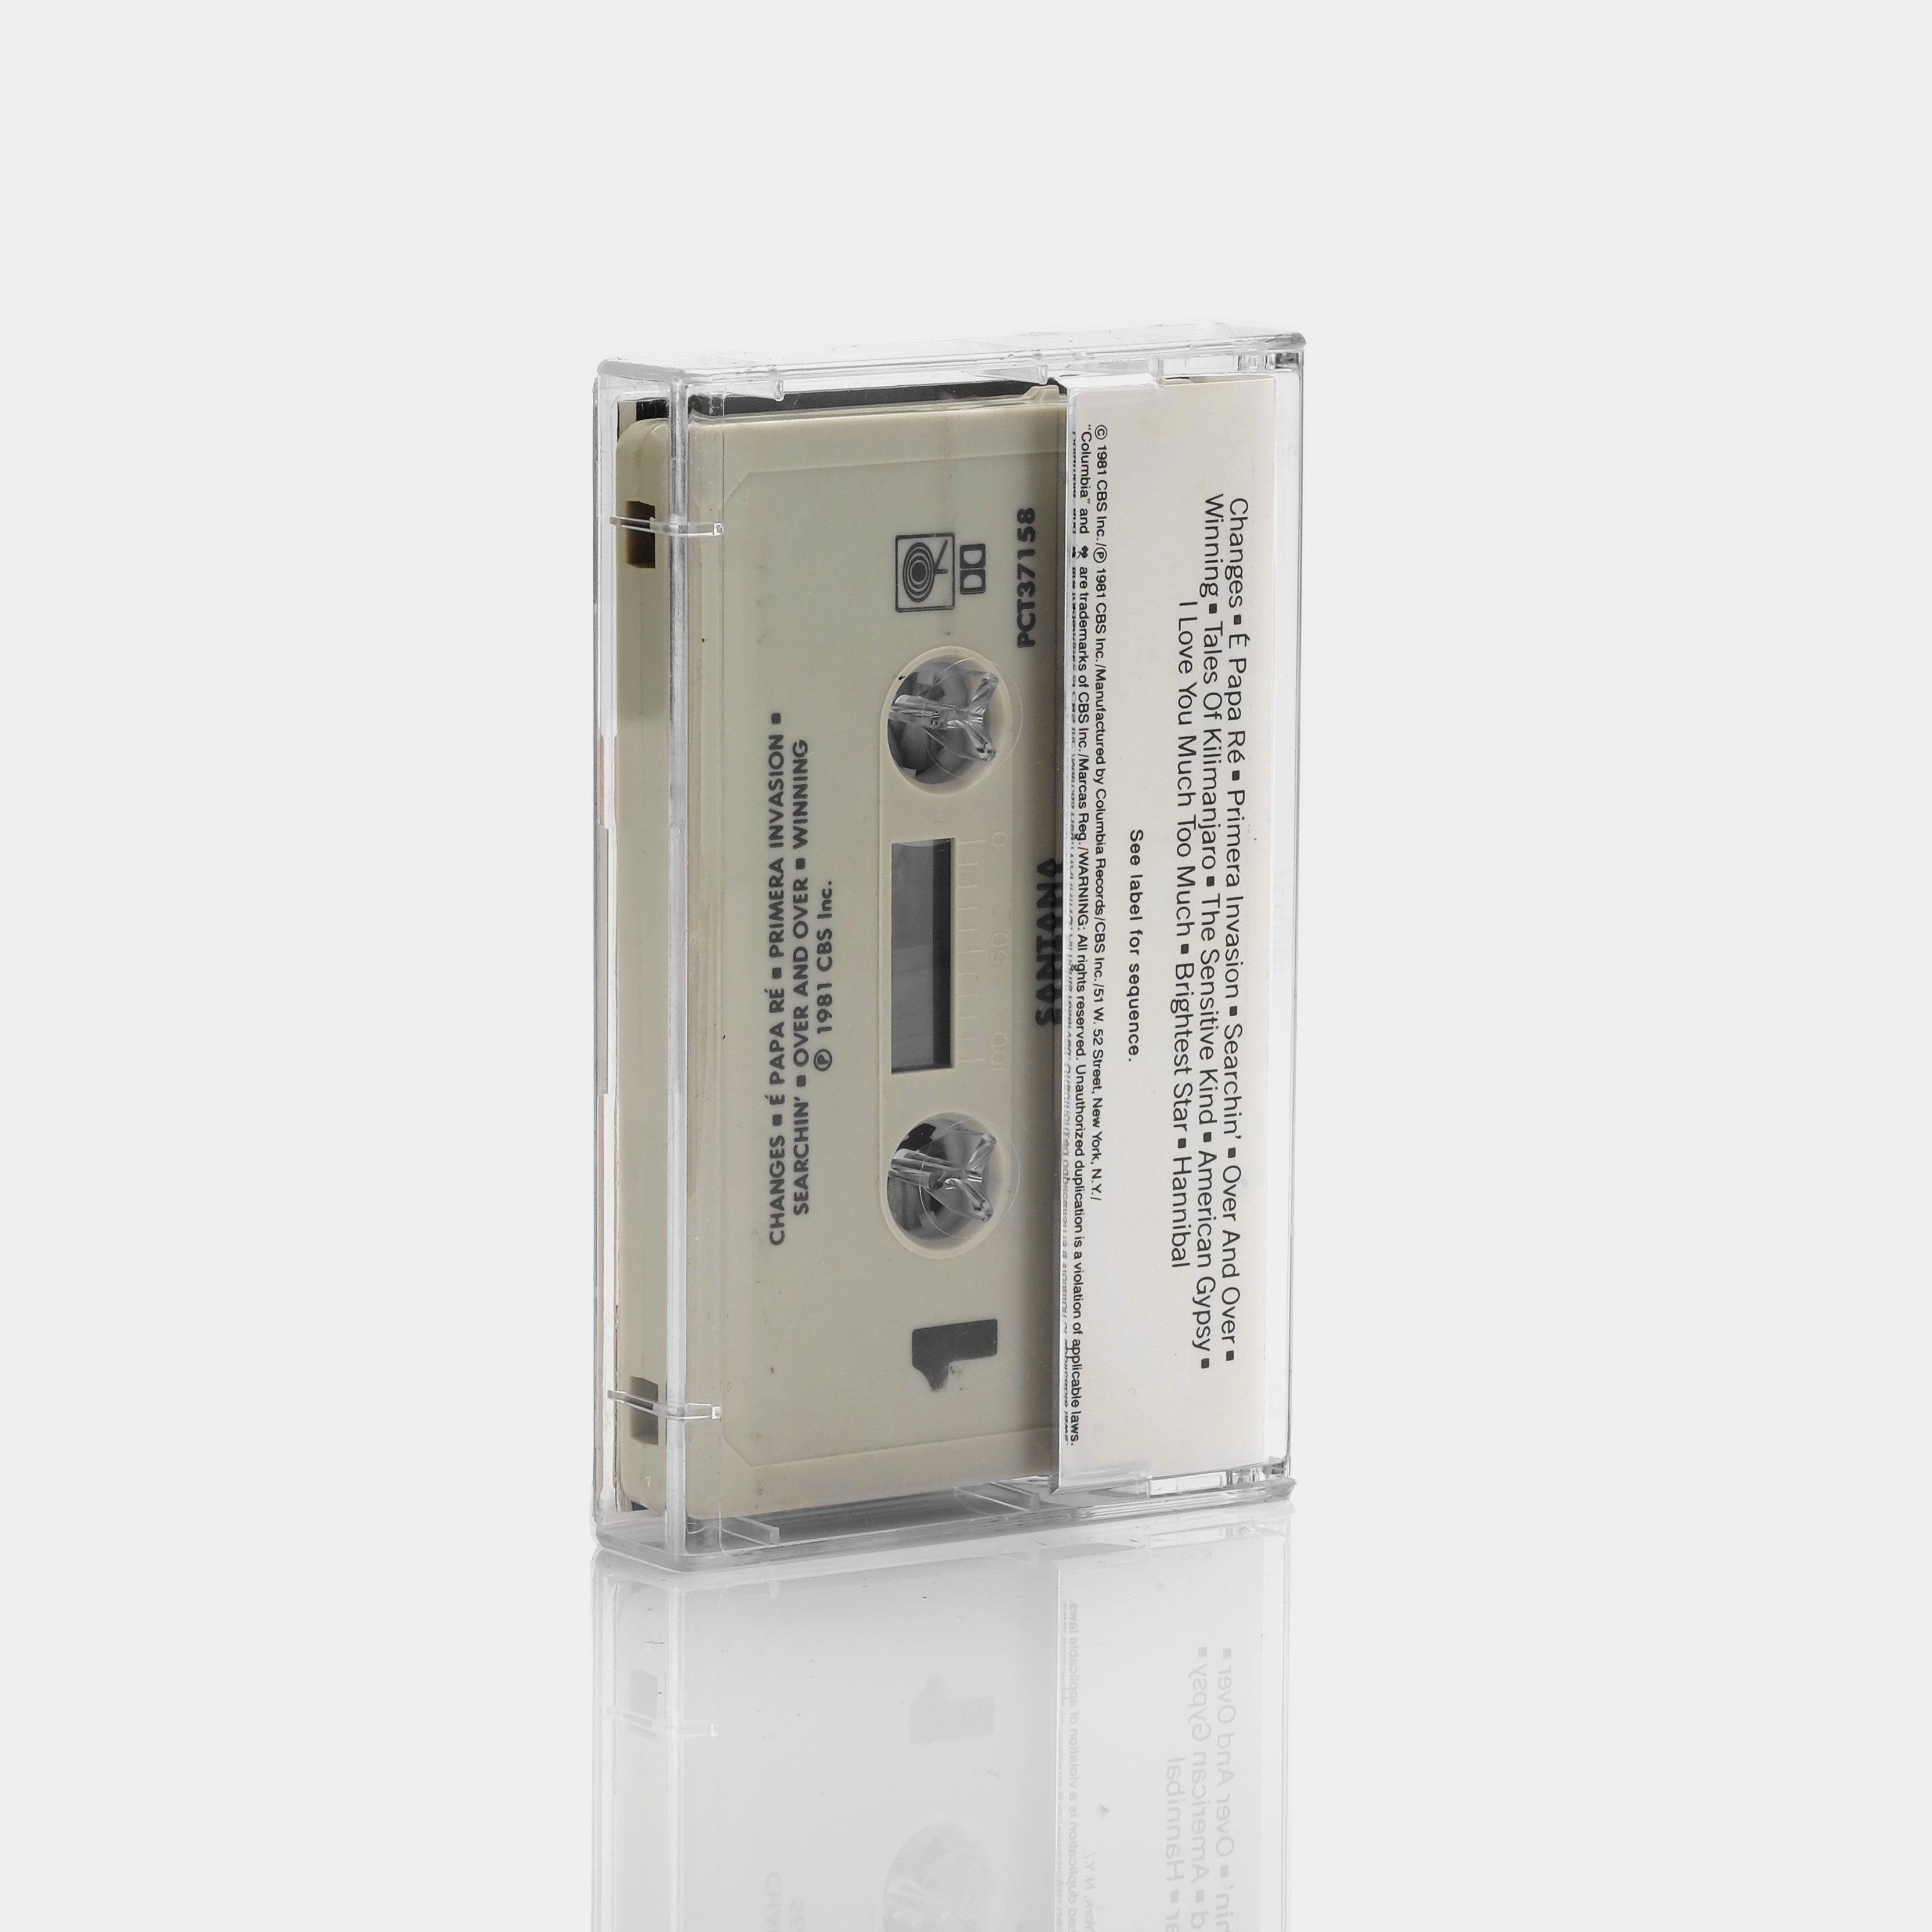 Santana - Zebop! Cassette Tape